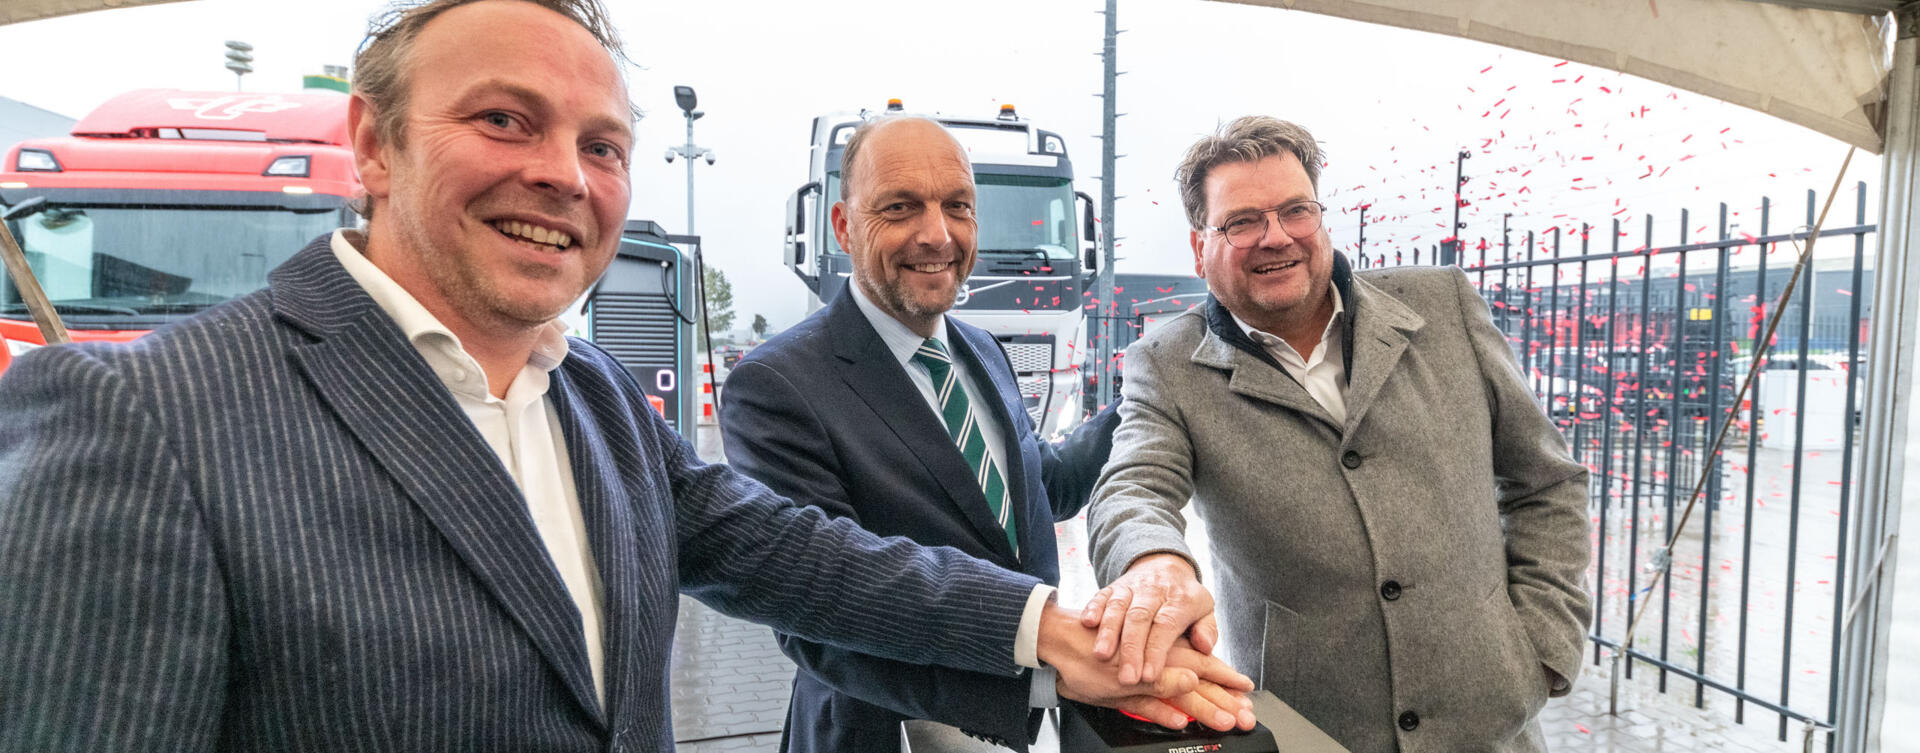 Feestelijke opening van laadplein voor elektrische trucks in Zwolle